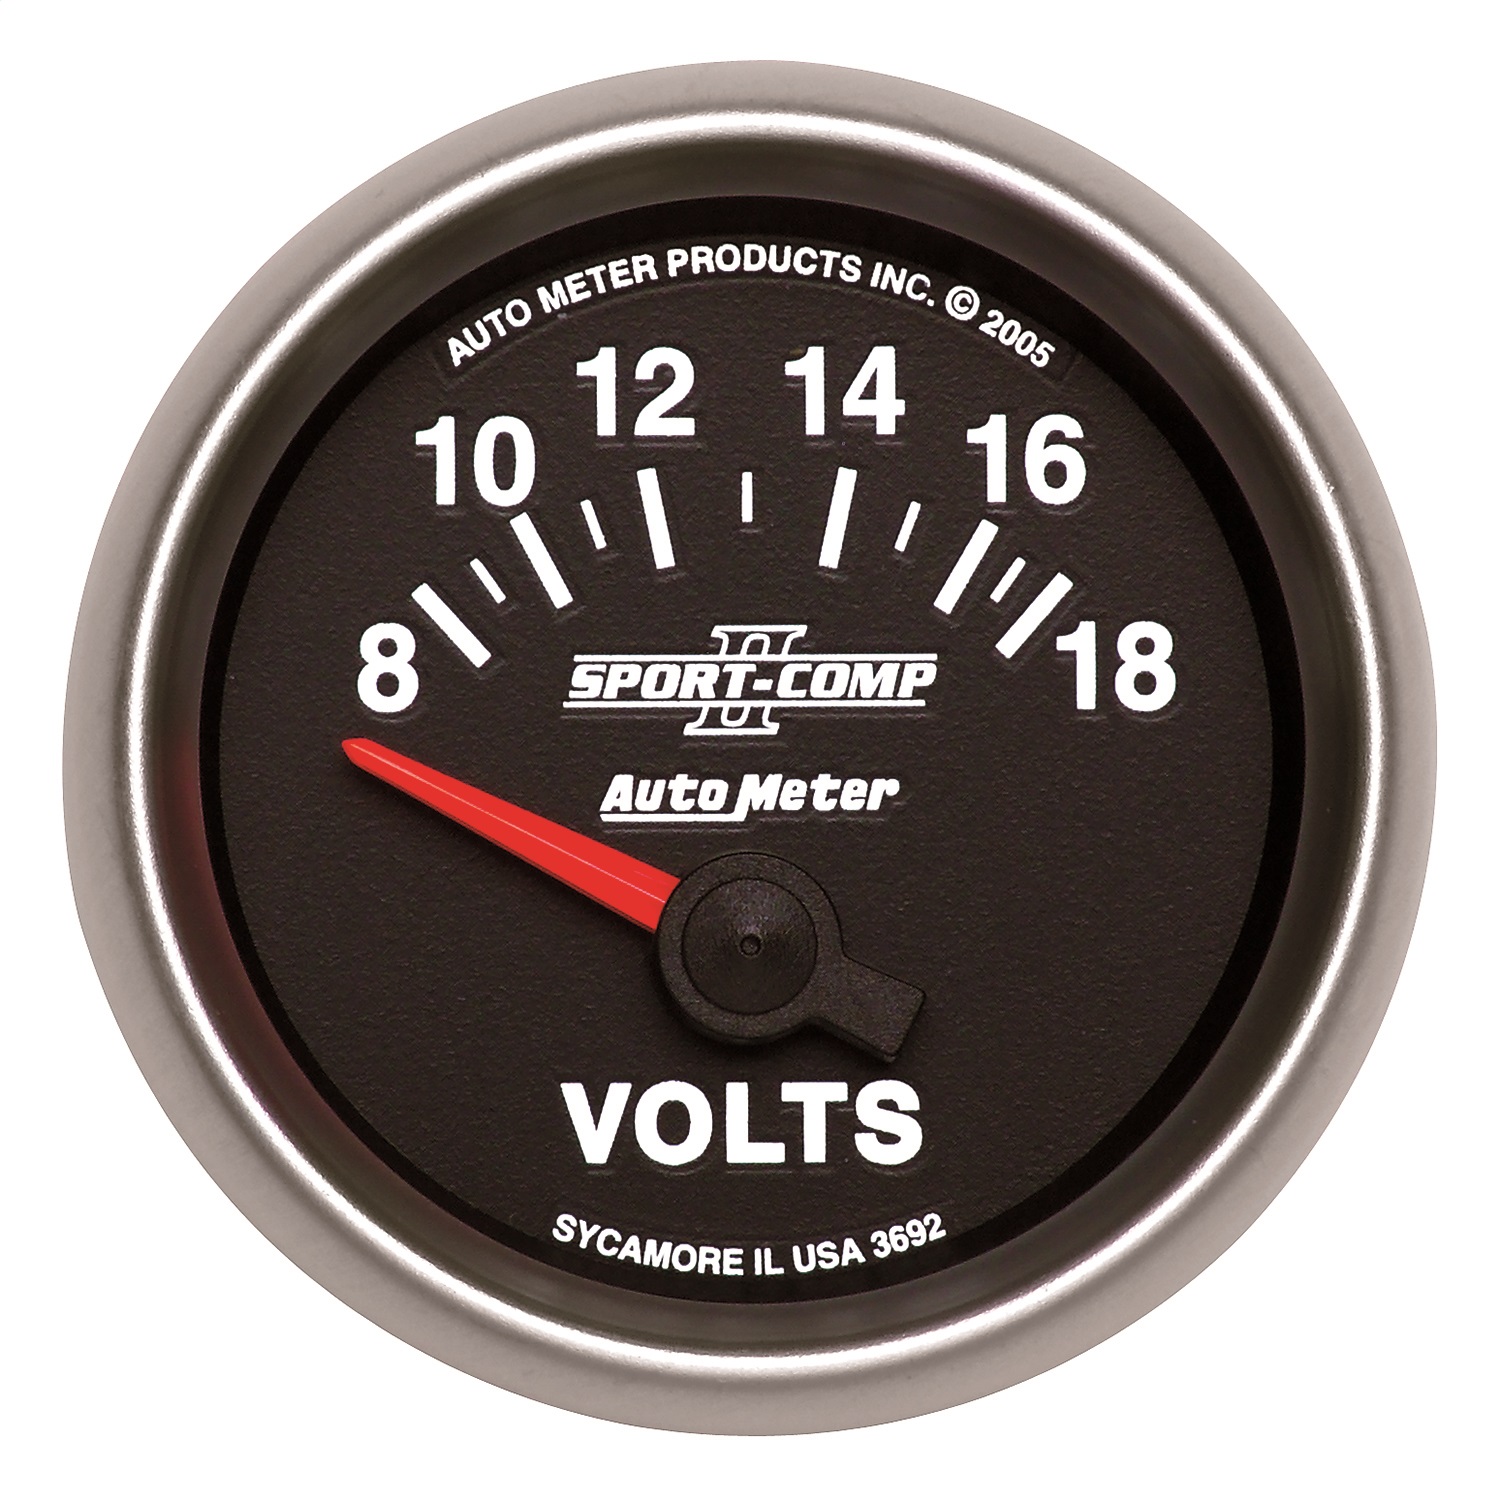 Auto Meter Auto Meter 3692 Sport-Comp II; Electric Voltmeter Gauge